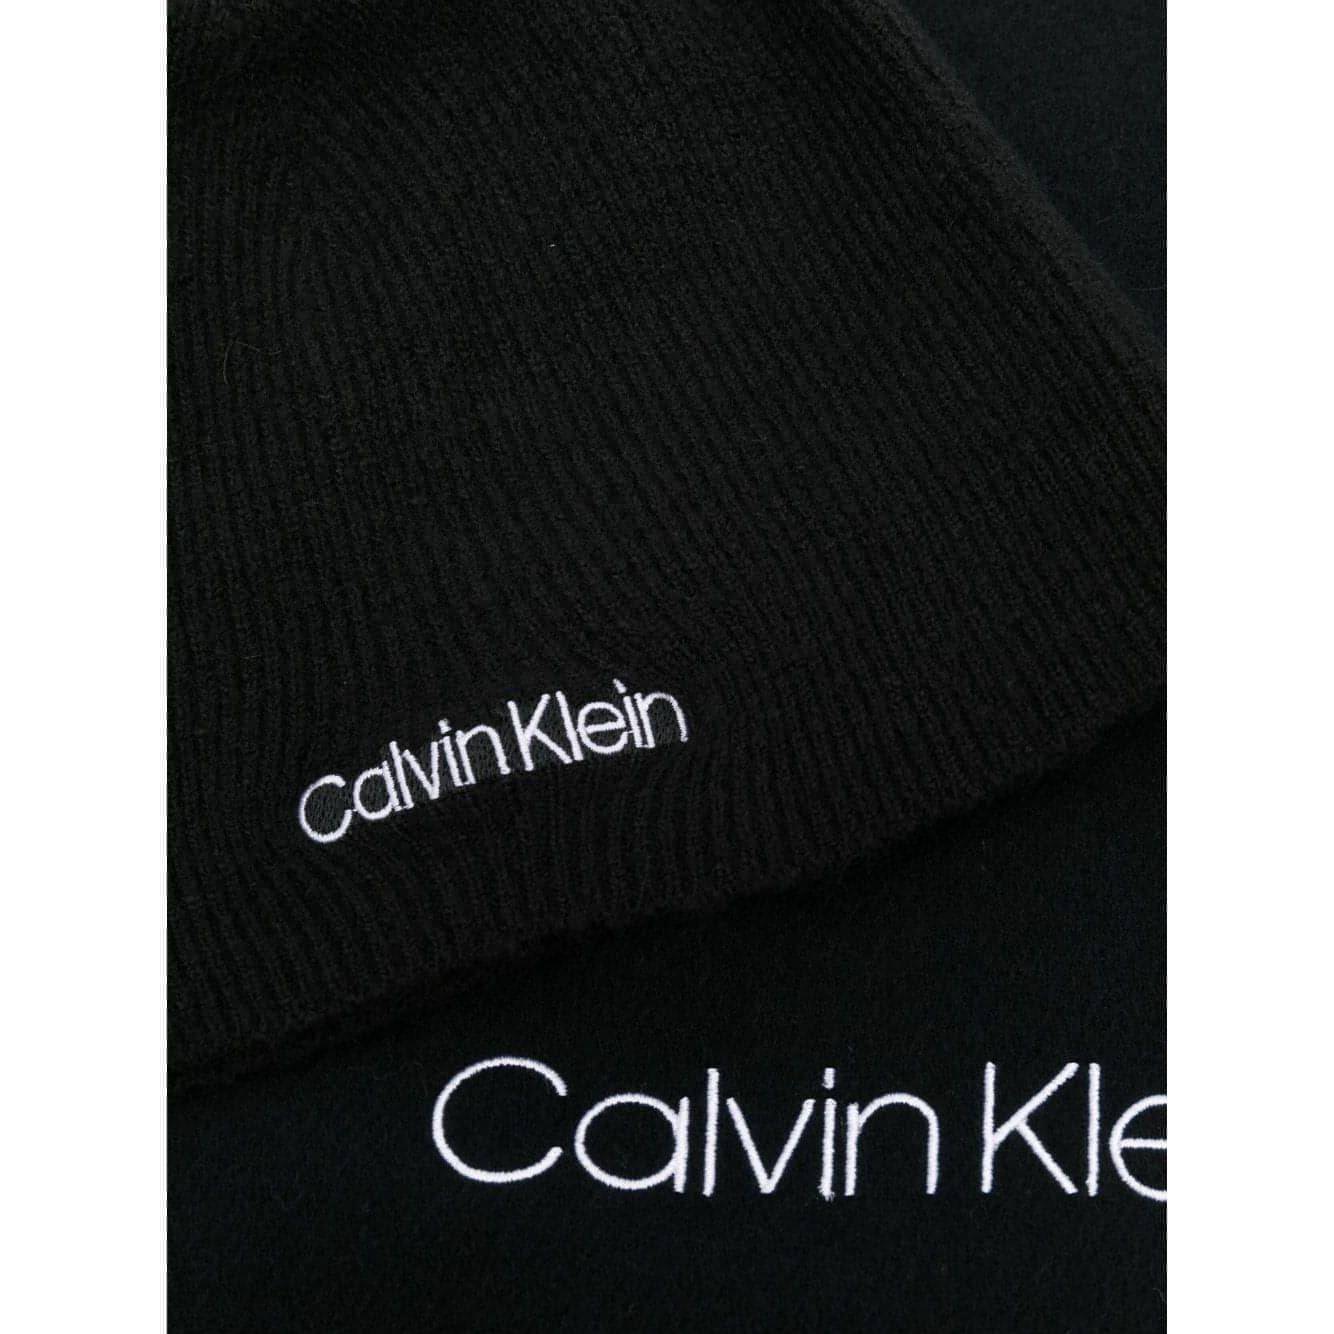 CALVIN KLEIN moteriškas - vyriškas juodas kepurės ir šaliko rinkinys BASIC vilna BEANIE+SCARF